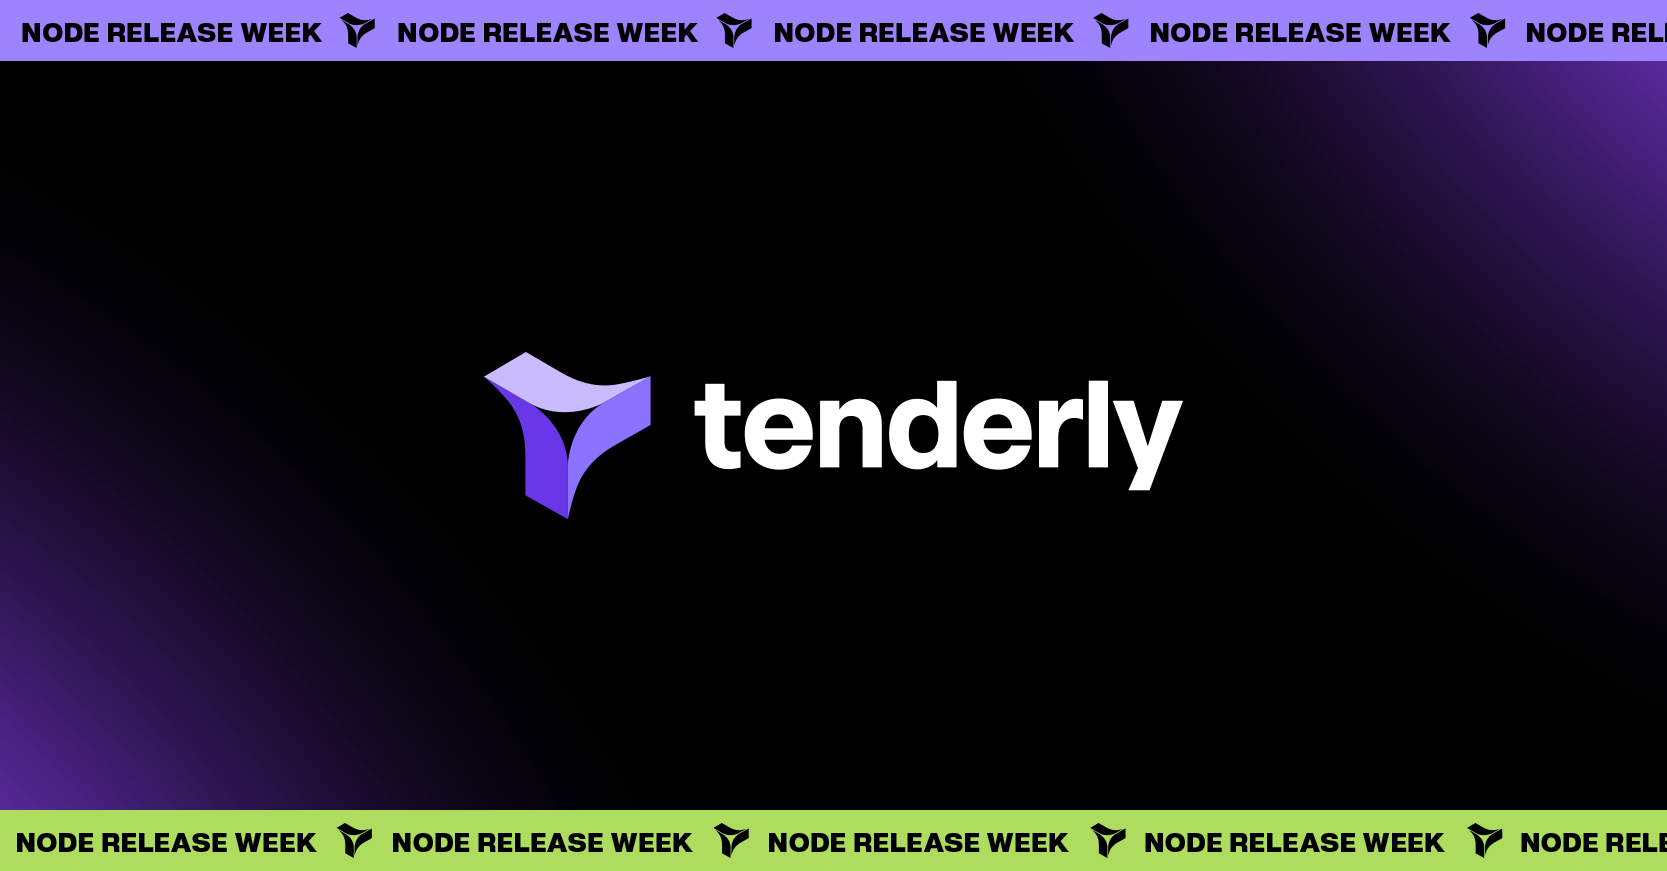 Tenderly Node Release Week